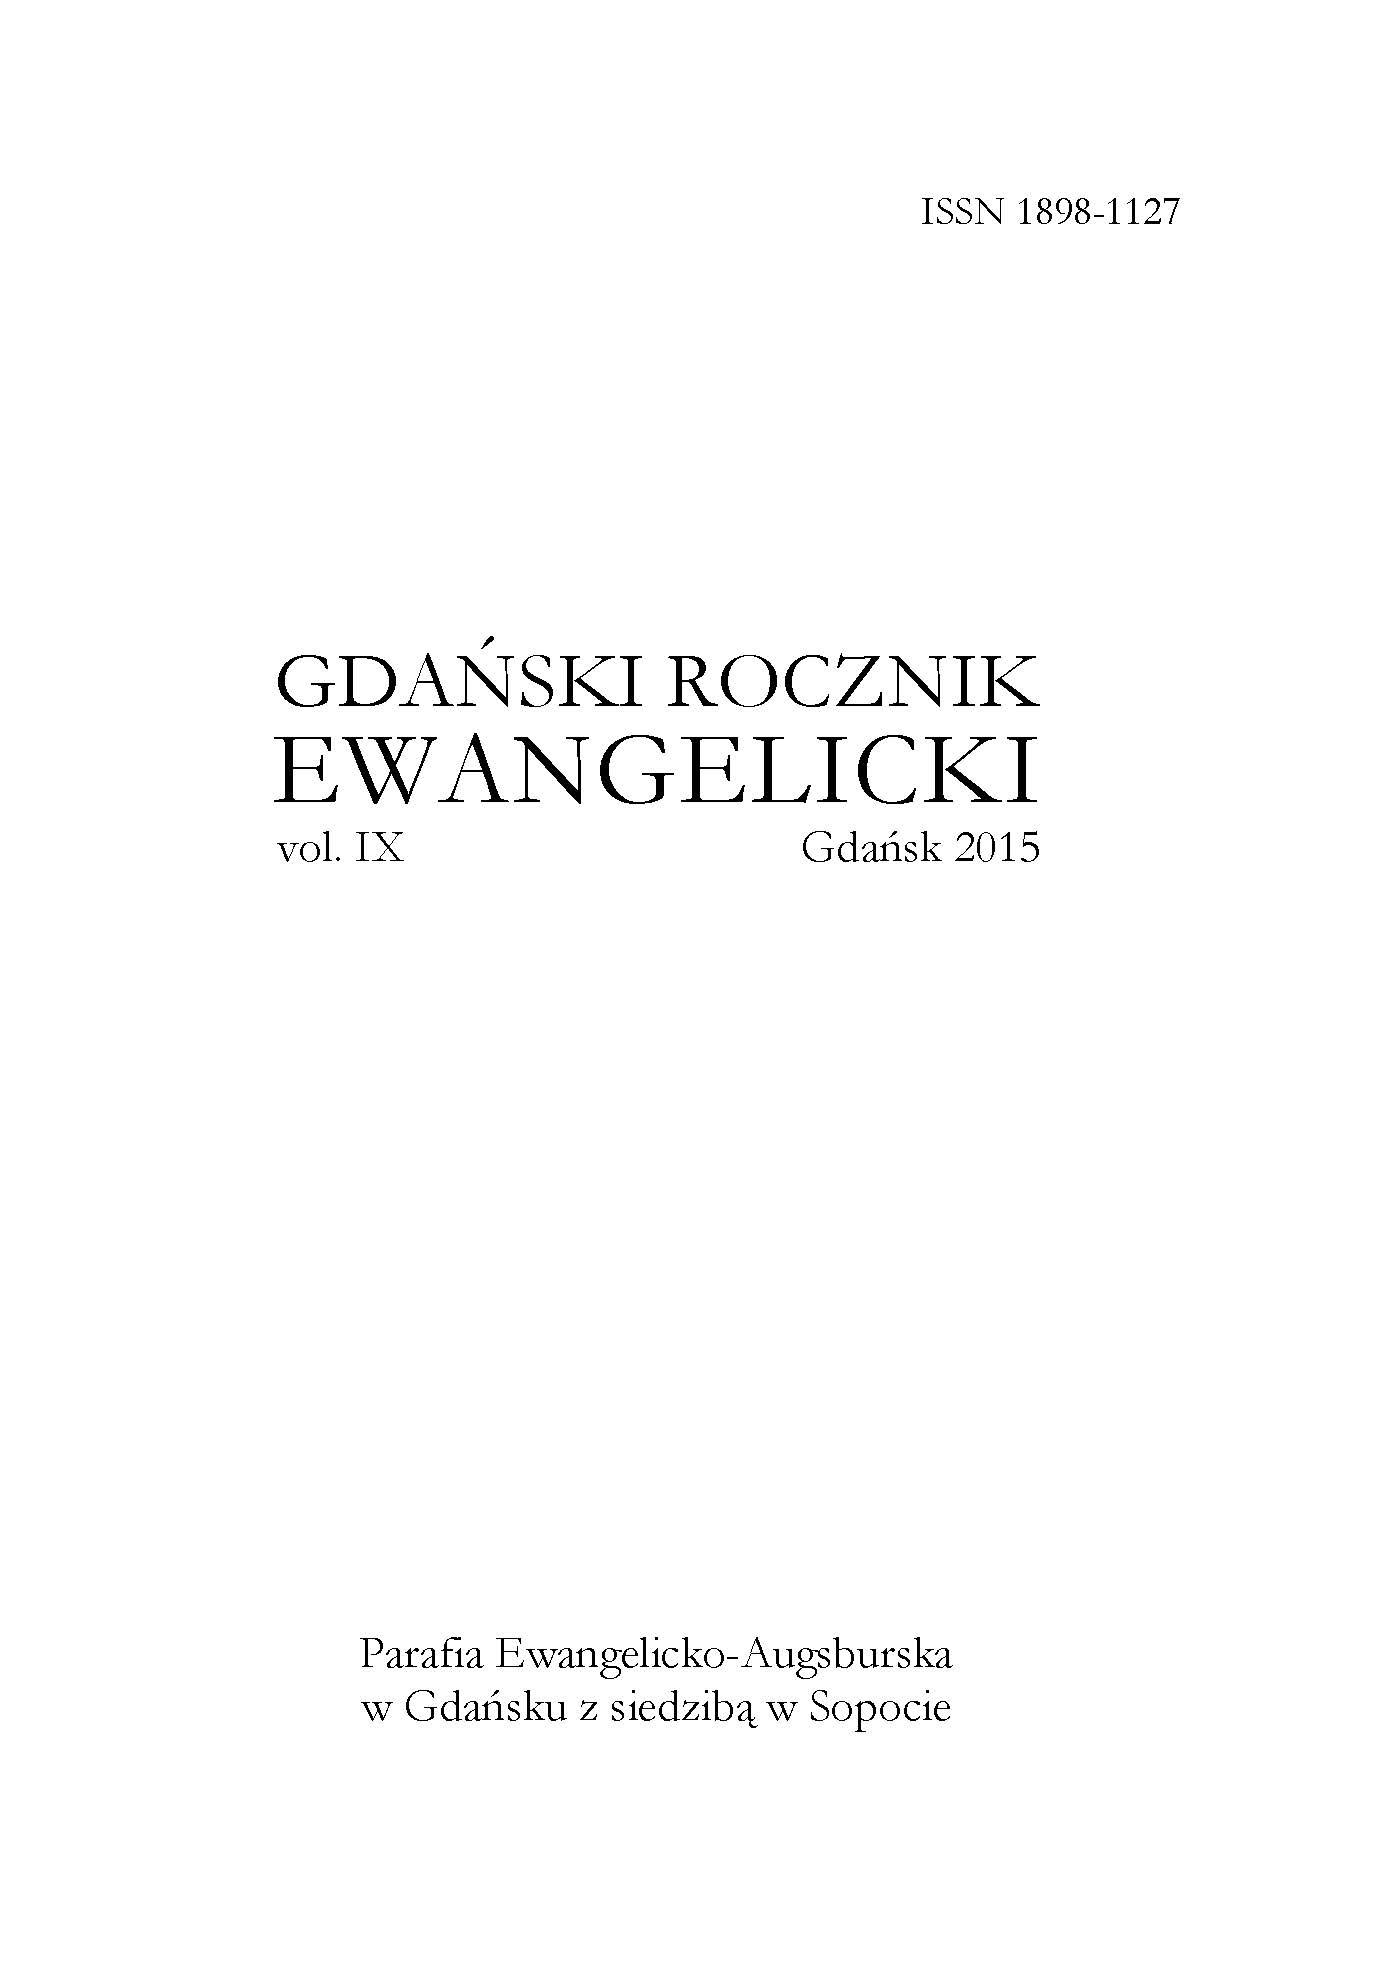 Kronika Parafii Ewangelicko-Augsburskiej w Gdańsku z siedzibą w Sopocie za rok 2015